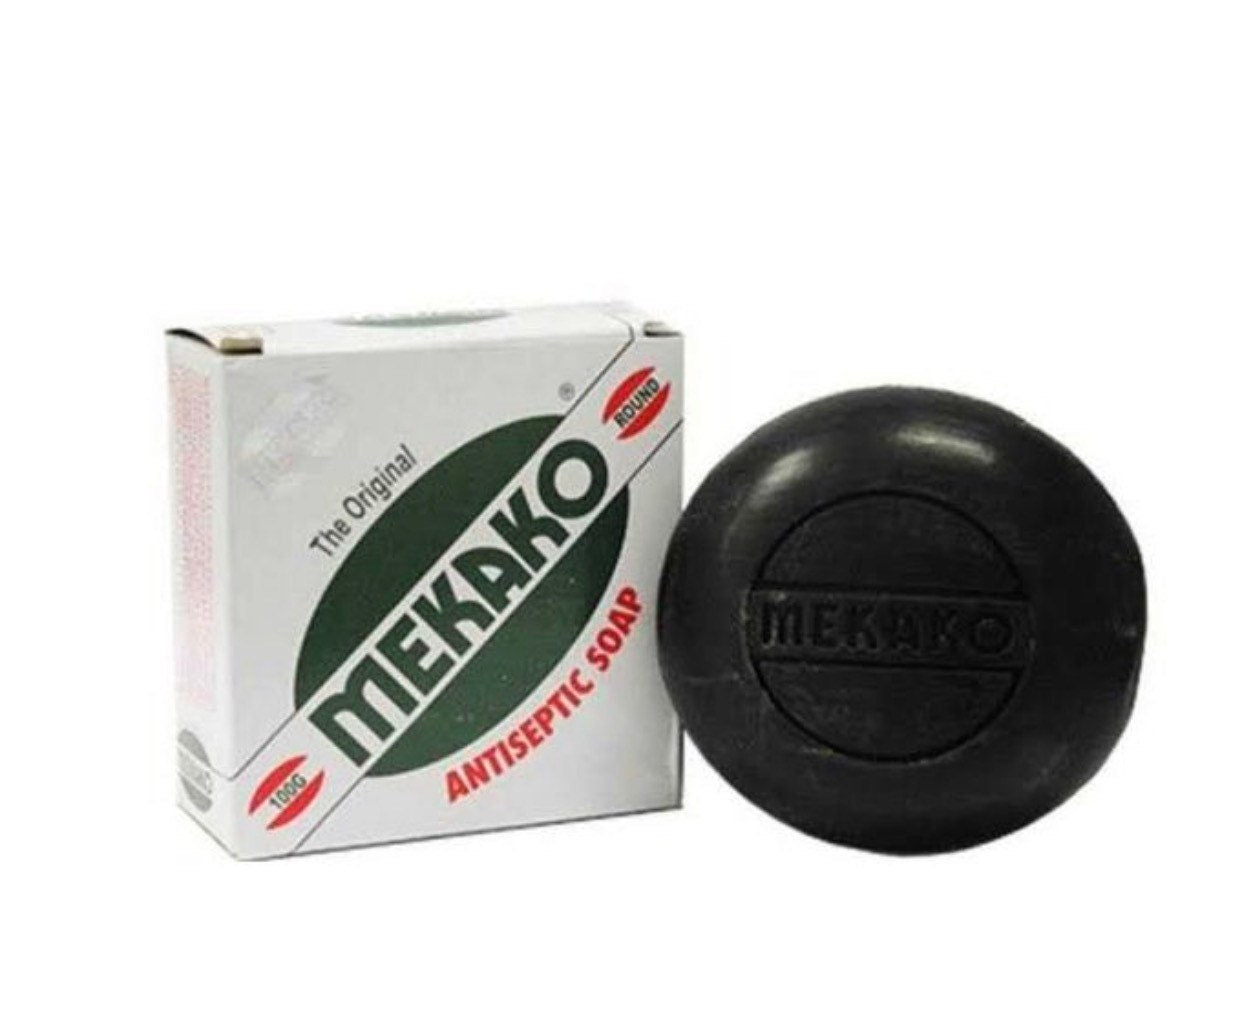 2packs  of Mekako Medicated Soap